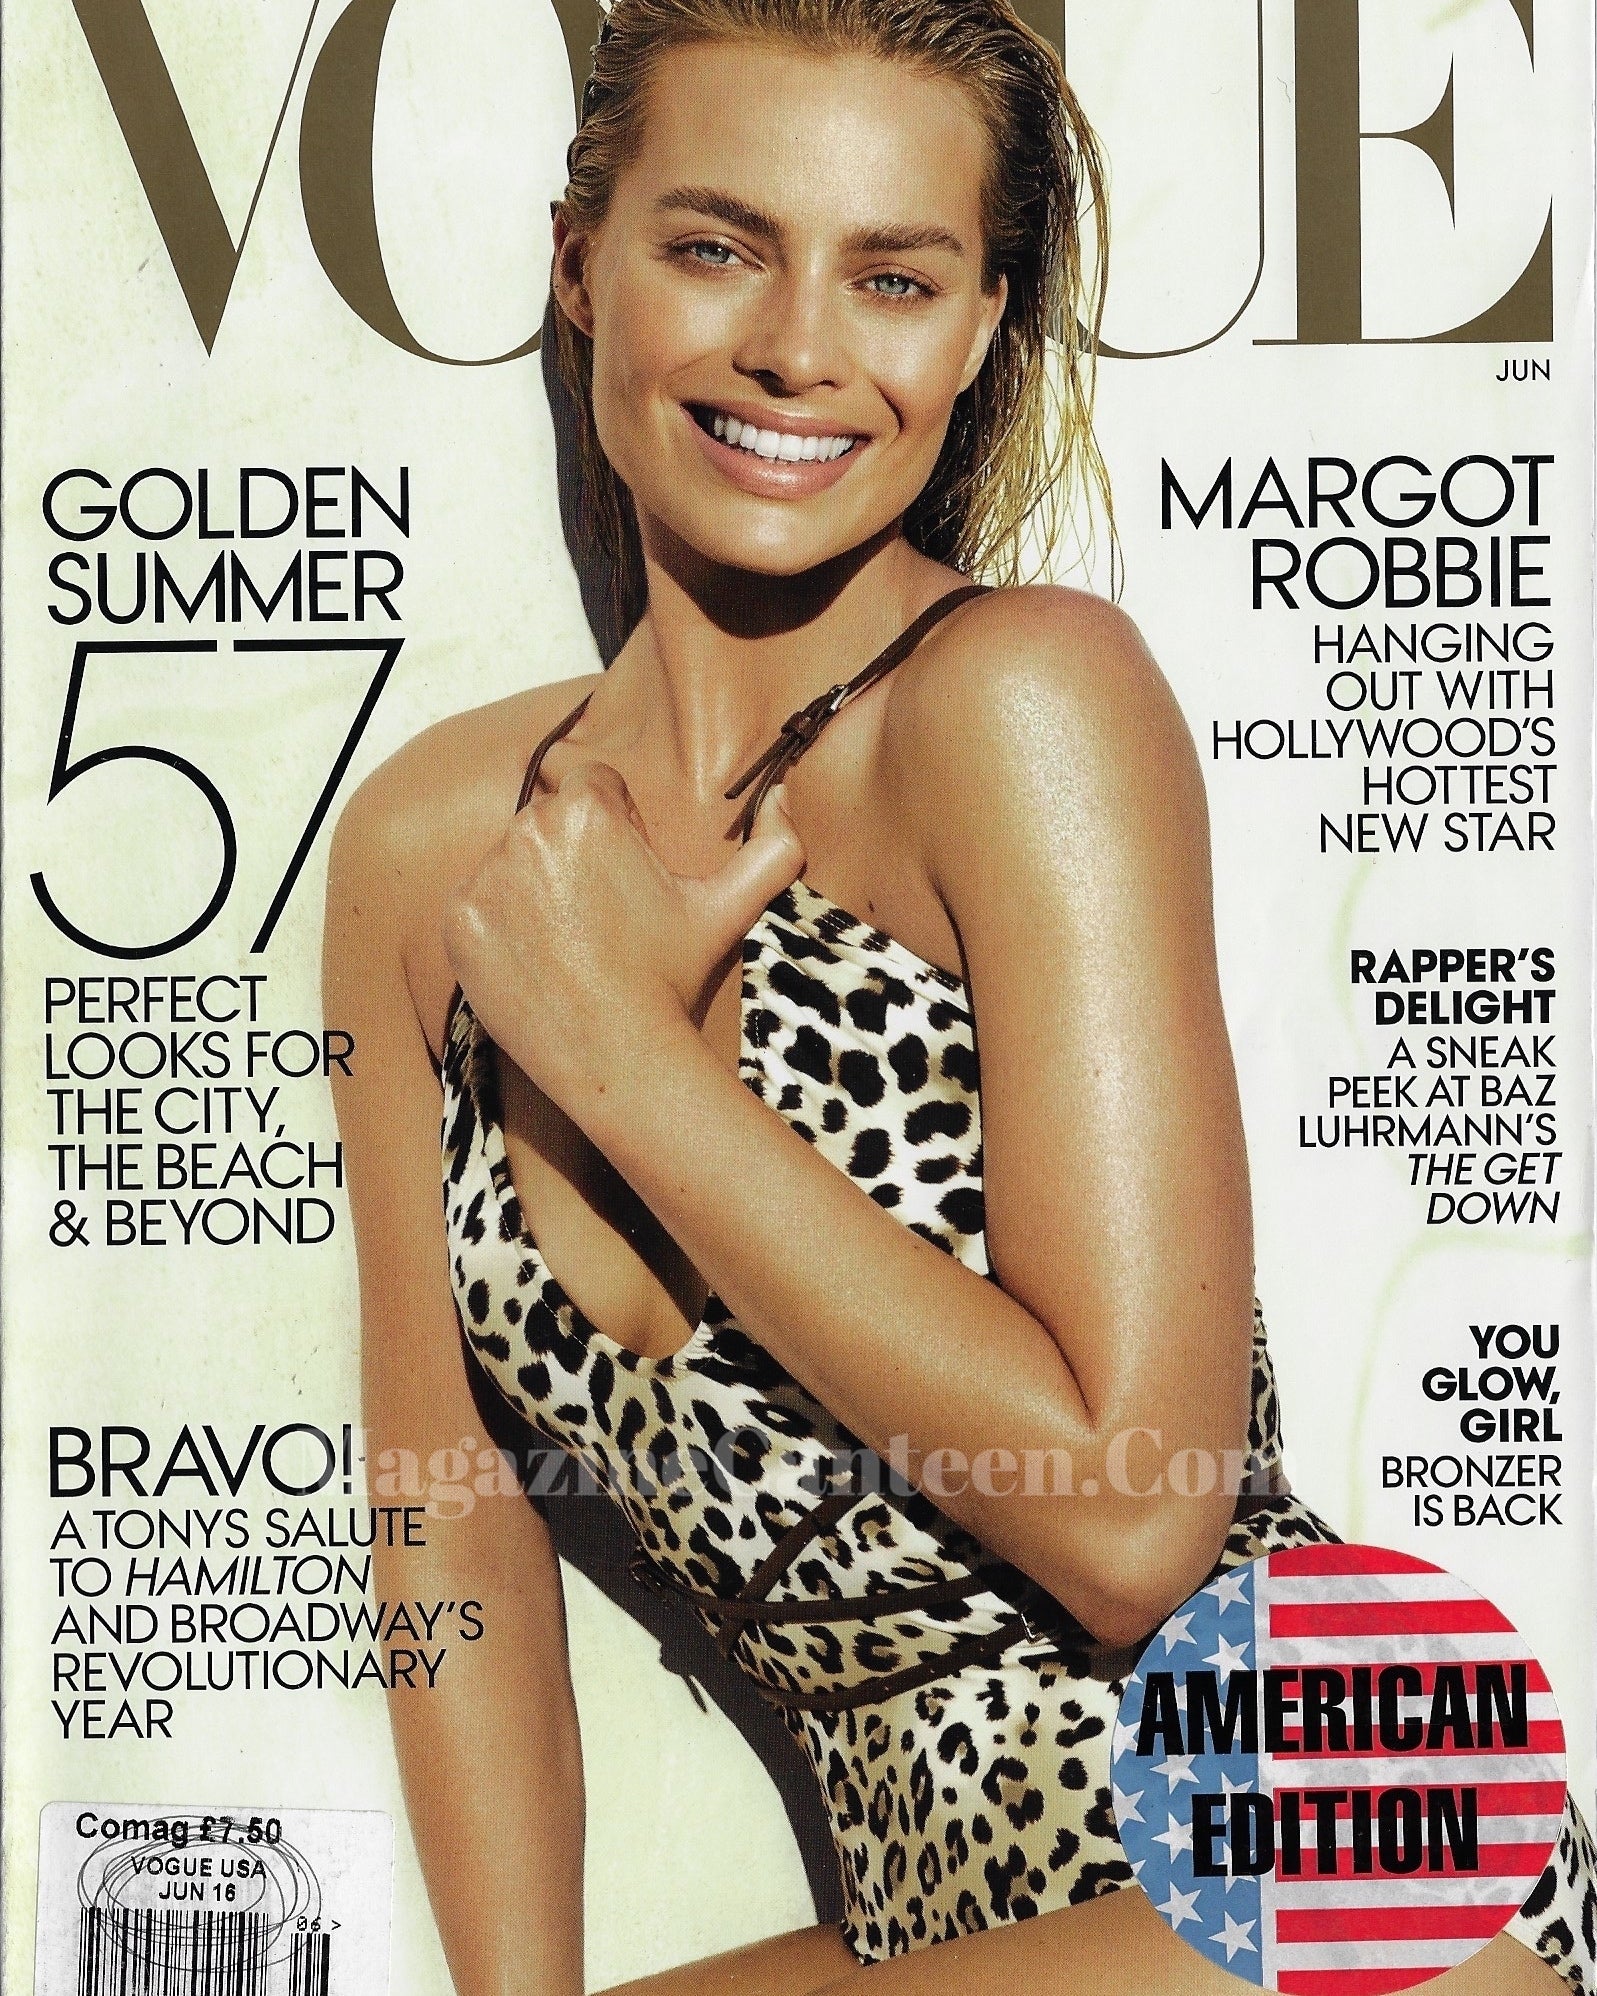 Vogue USA Magazine June 2016 - Margot Robbie